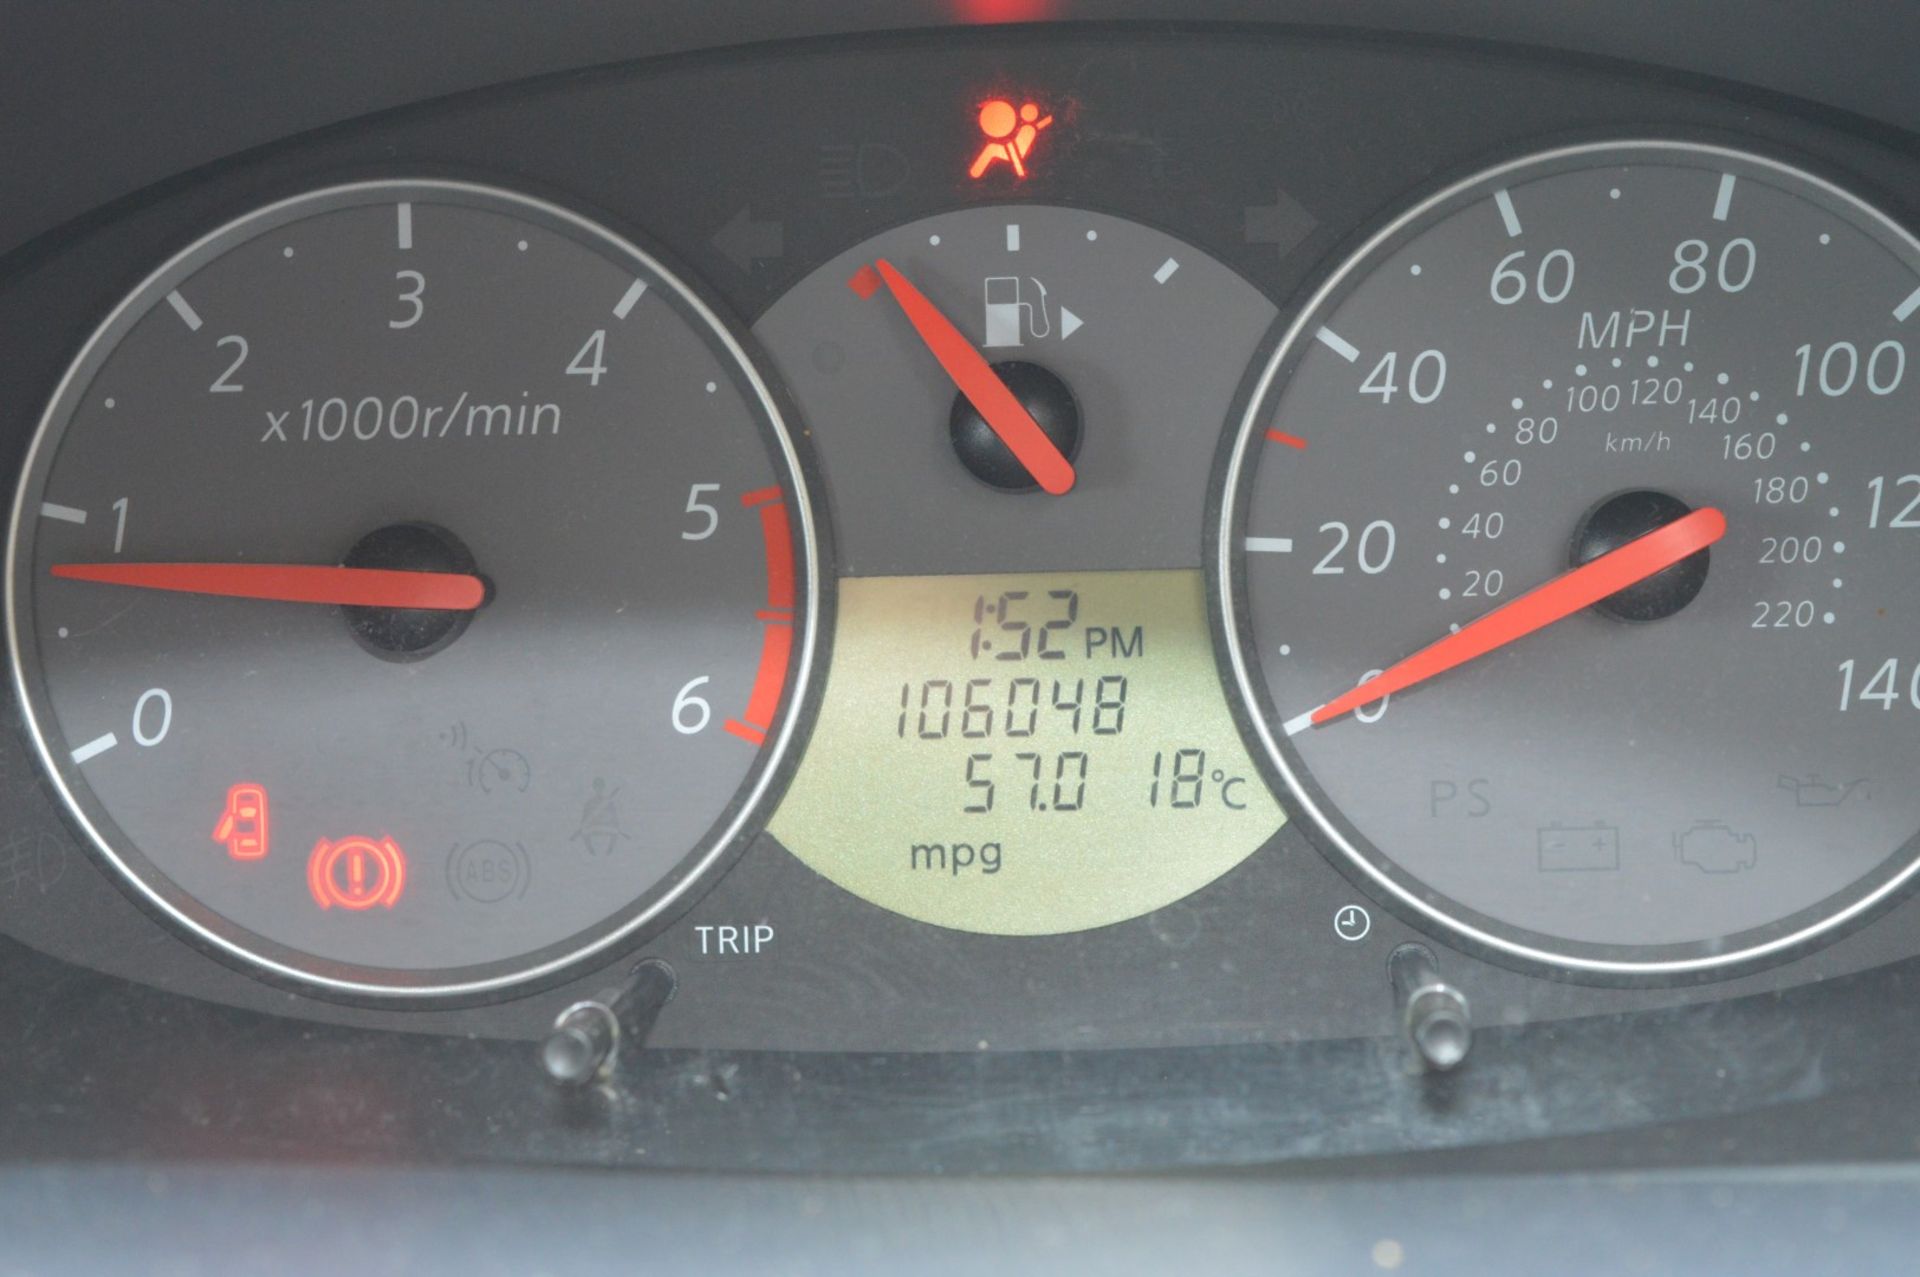 1 x Nissan Micra N-Tec DCI 5 Door Hatchback - 2010 - 106,000 Miles - MOT September 2017 - Sat Nav - Image 24 of 41